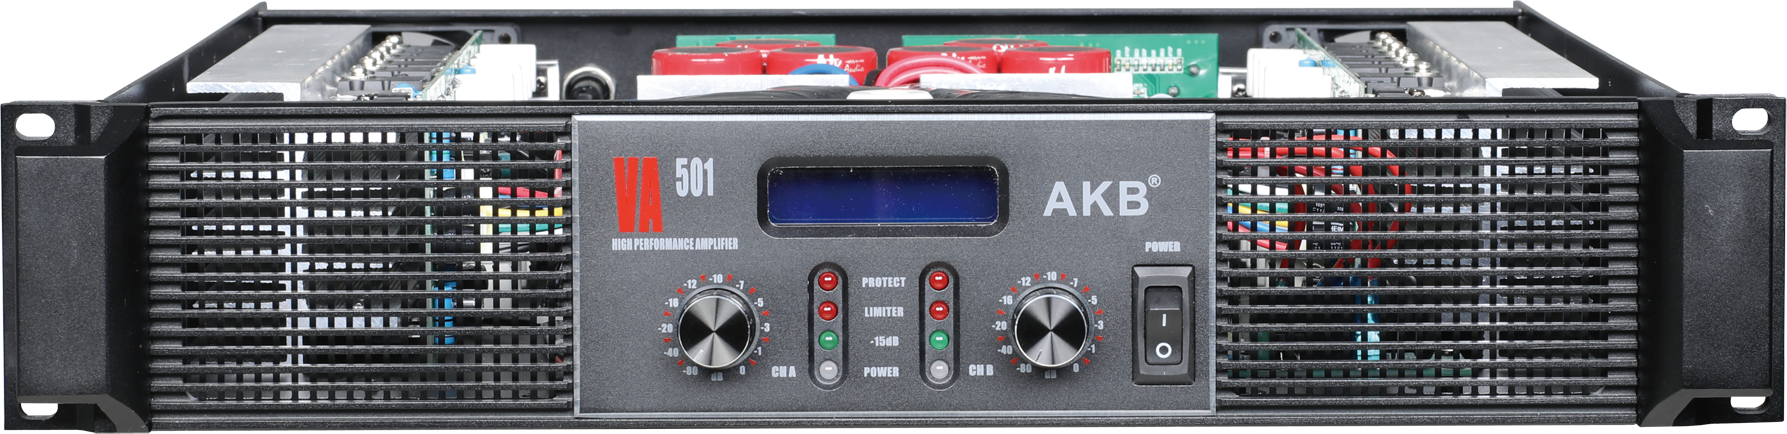 VA serie amplificador de potencia de clase I profesional